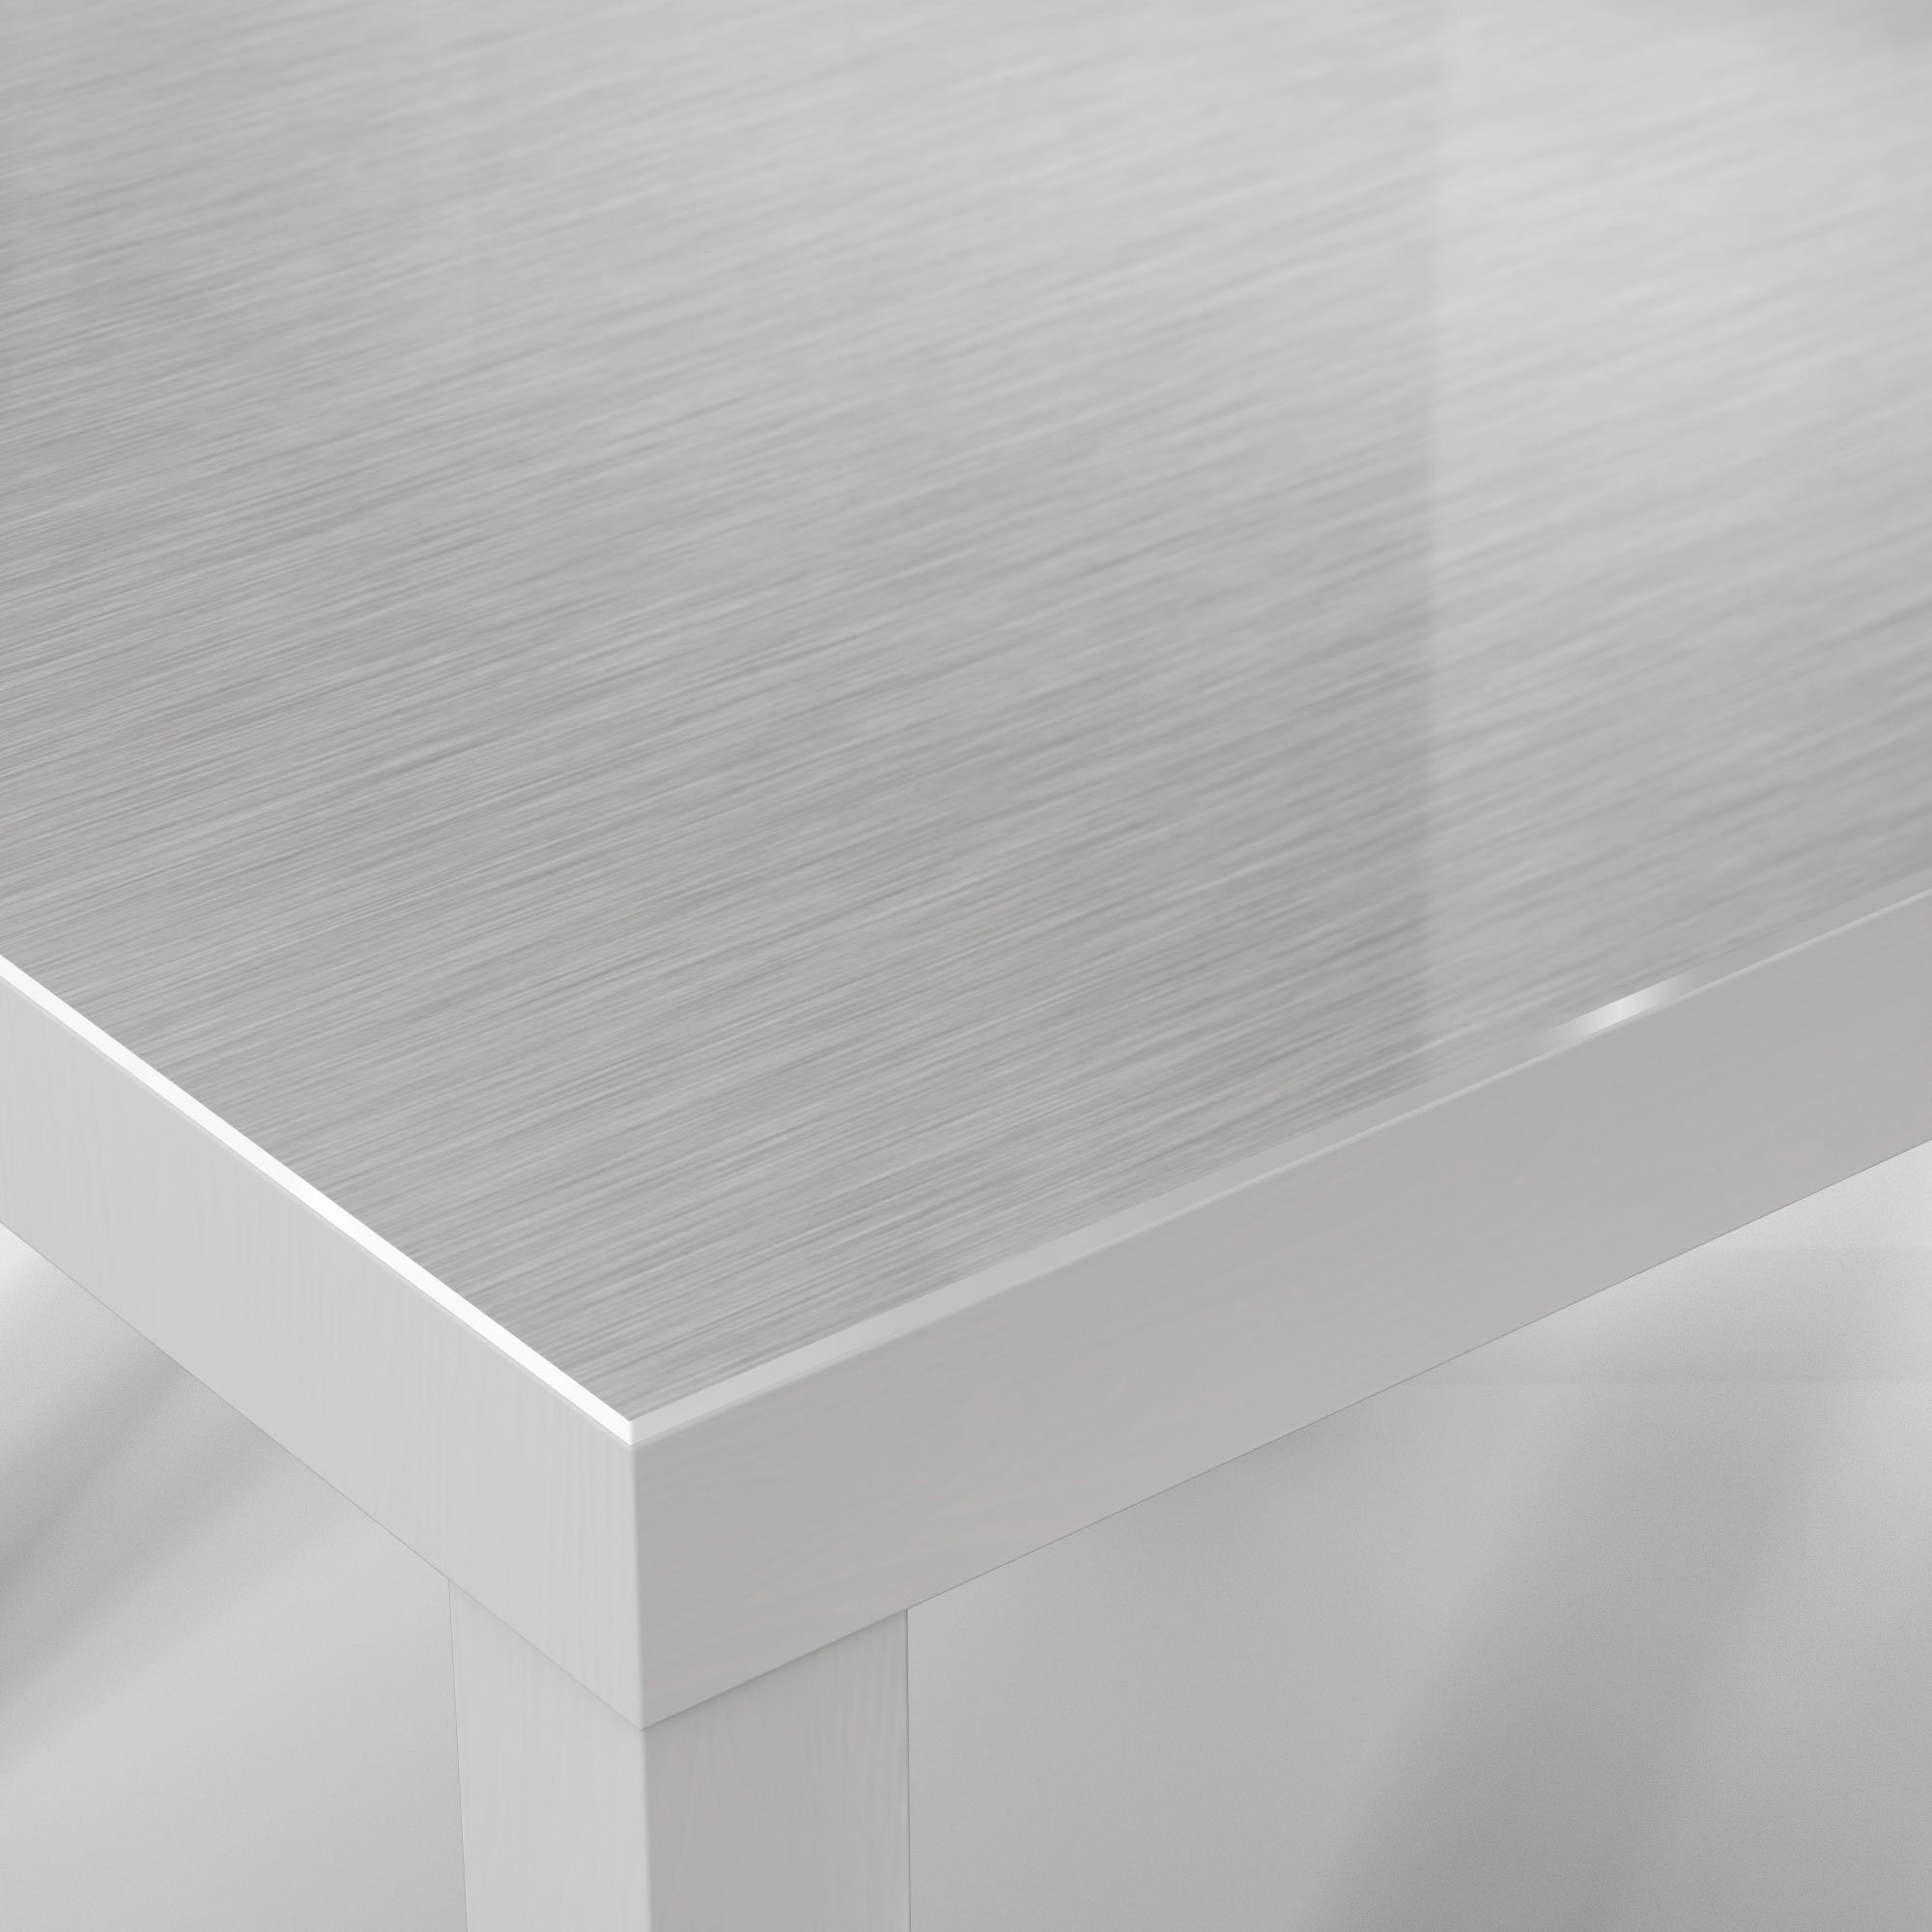 DEQORI Couchtisch Beistelltisch Stahl', modern Glas Weiß Glastisch 'Gebürsteter